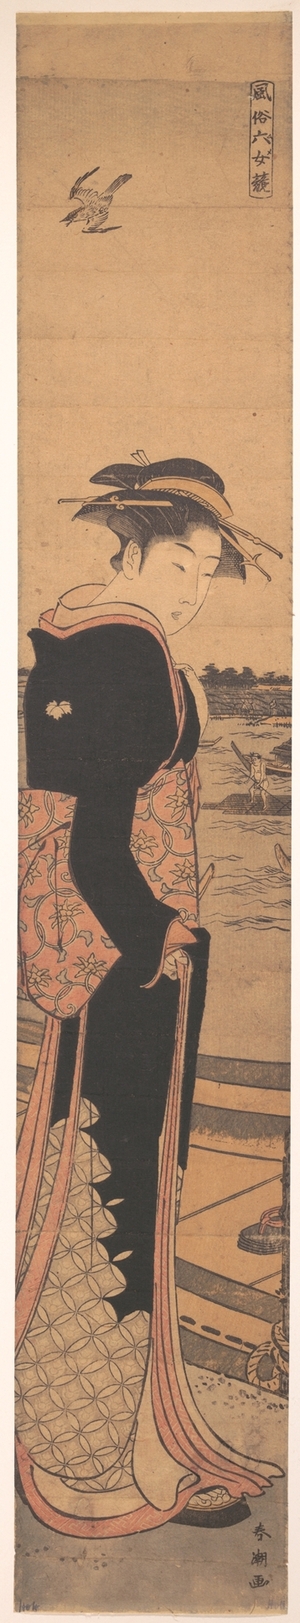 勝川春潮: Young Lady by the Shore - メトロポリタン美術館